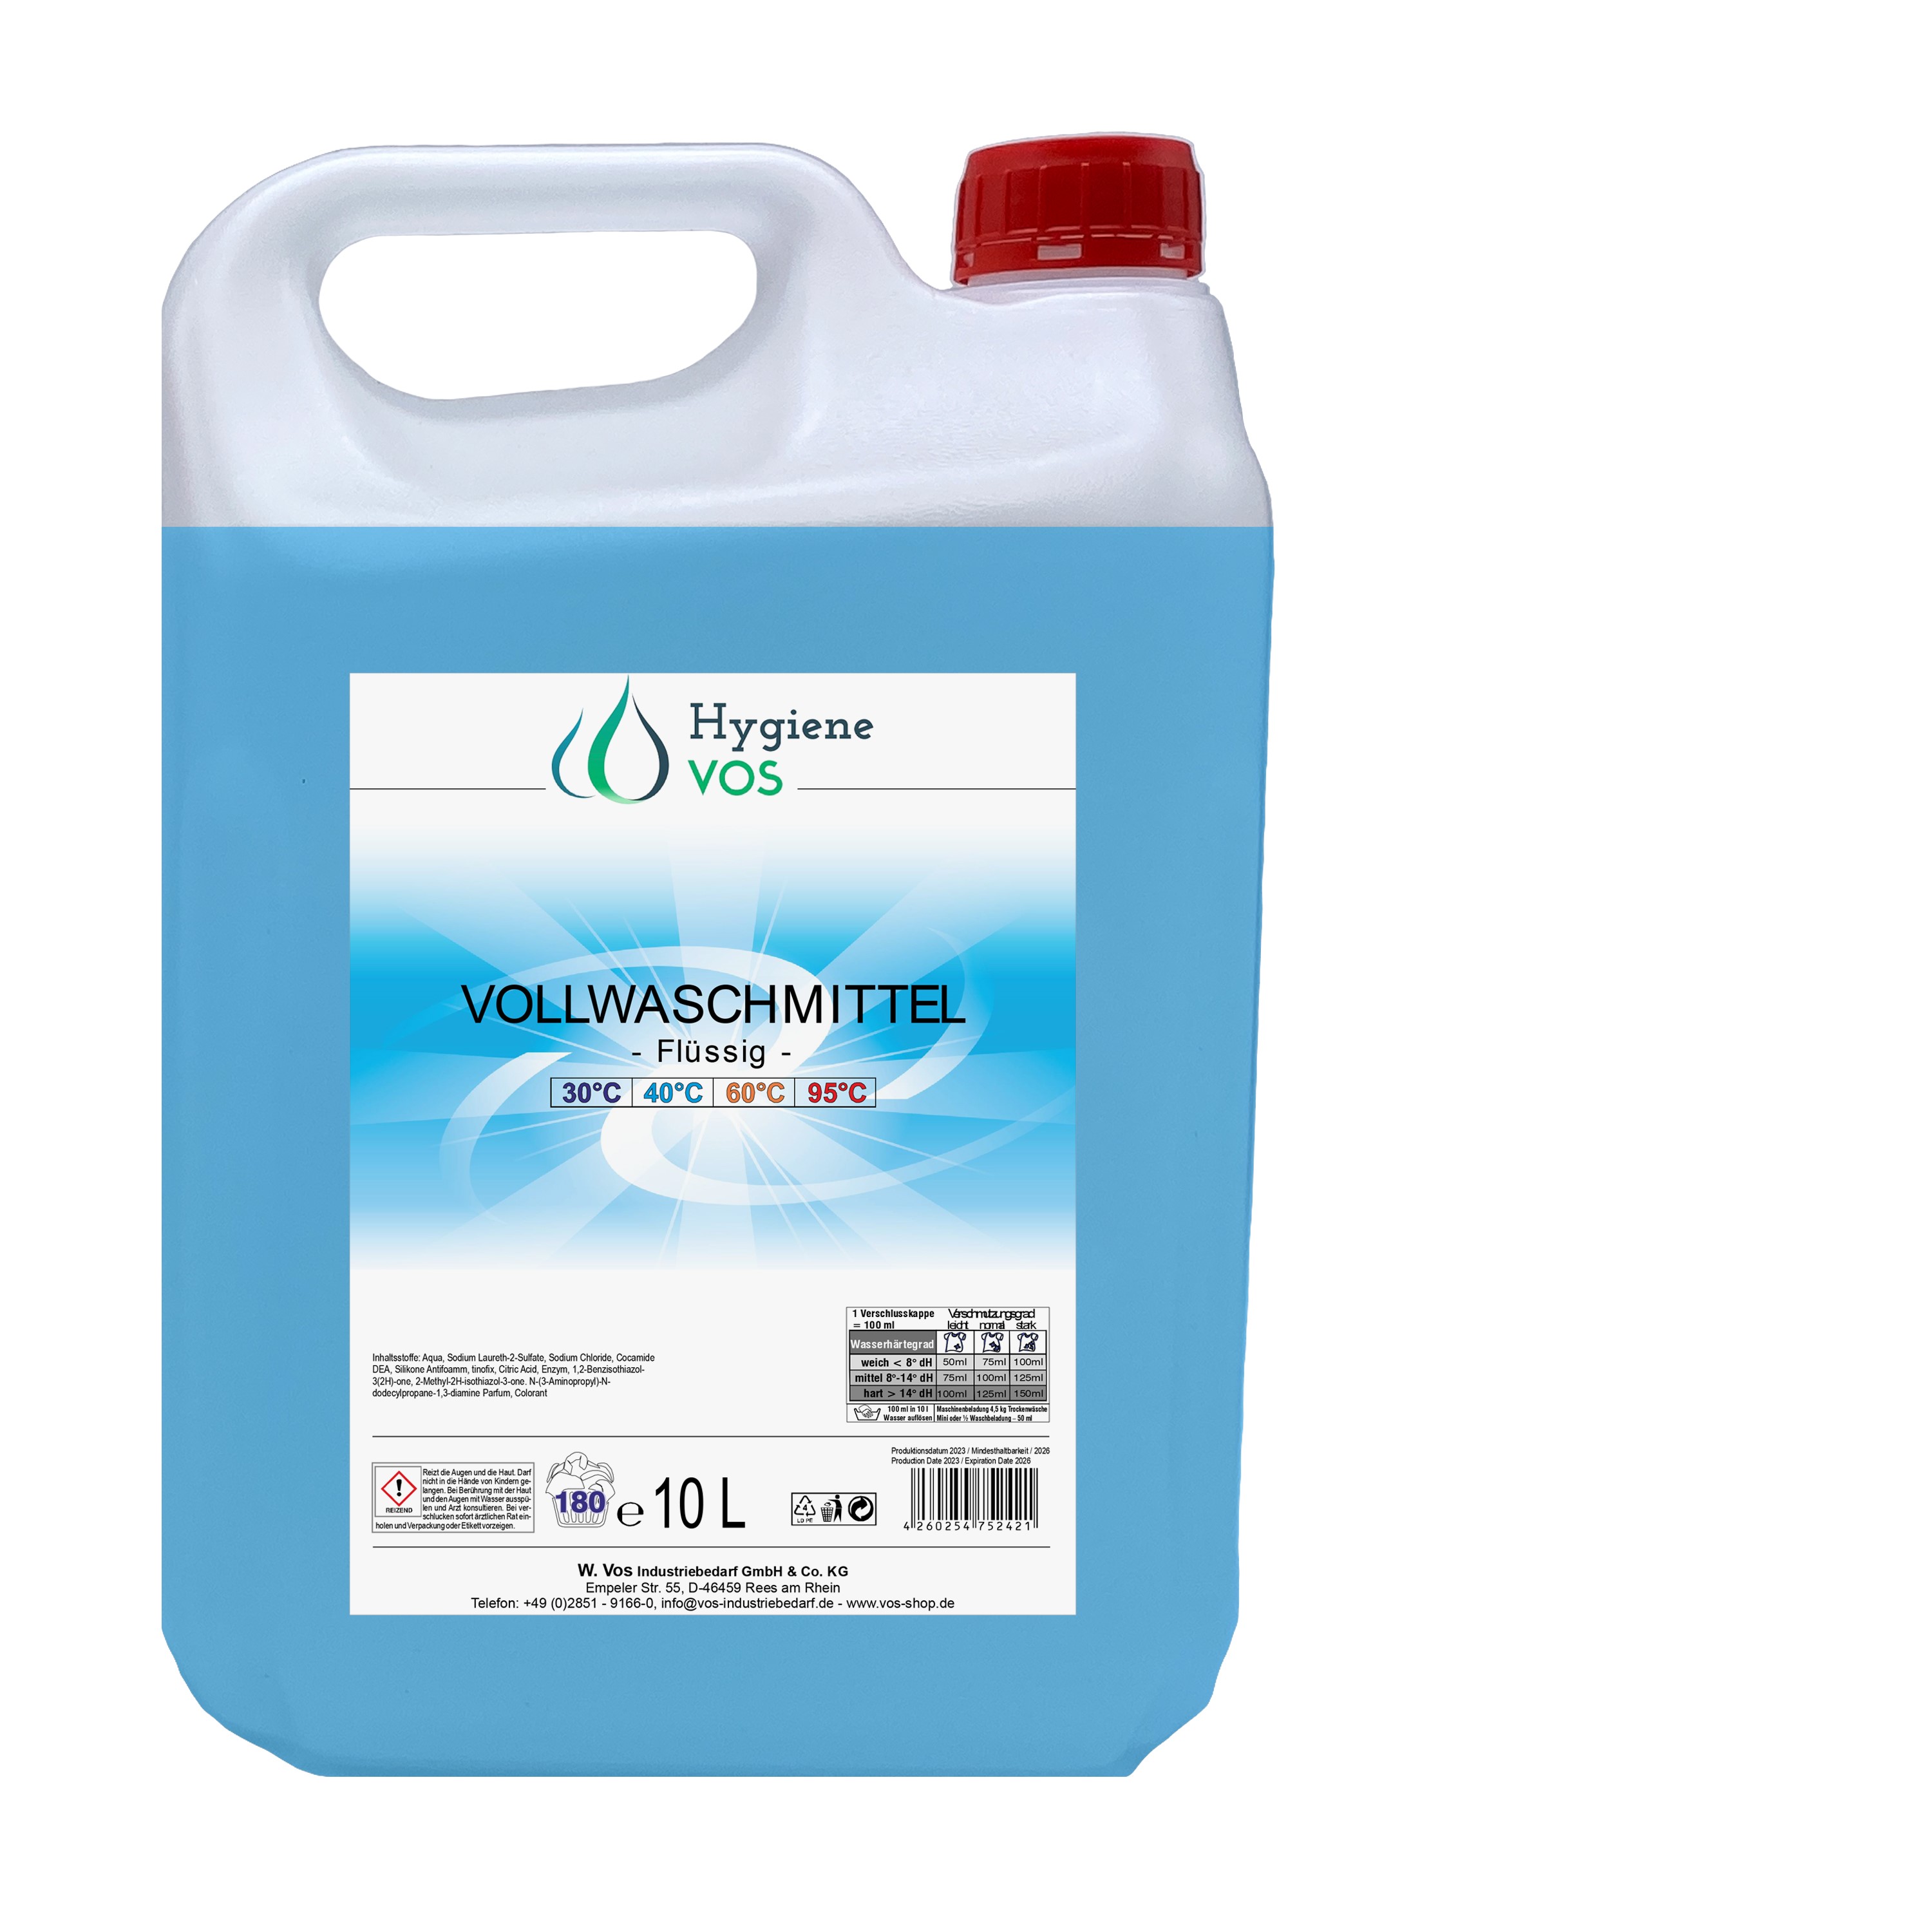 Hygiene Vos Vollwaschmittel flüssig 10 Liter